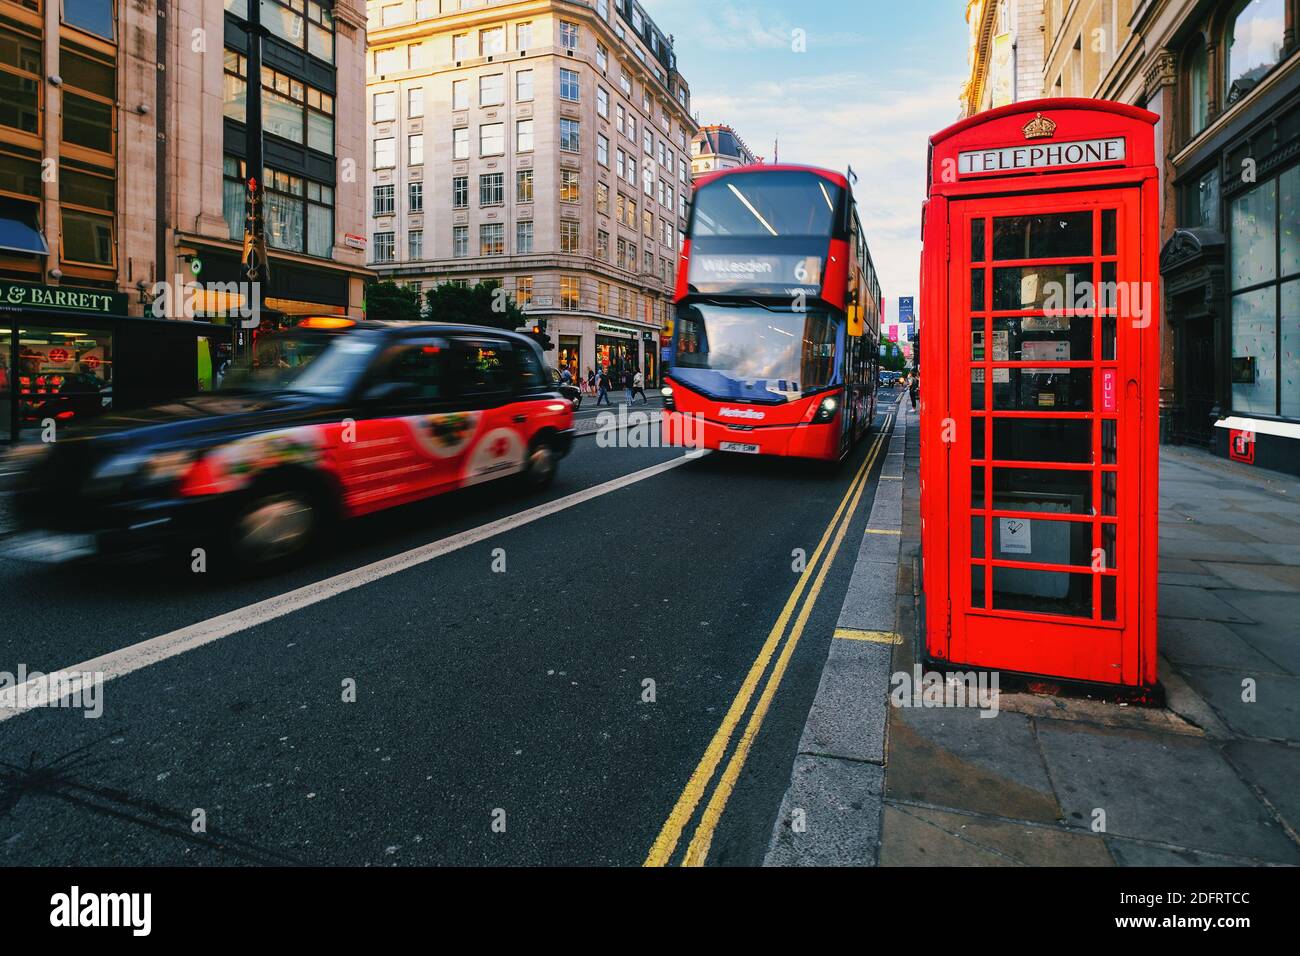 Icônes de Londres. Taxi noir, bus à impériale rouge et cabine téléphonique au Strand, une célèbre rue de Londres Banque D'Images